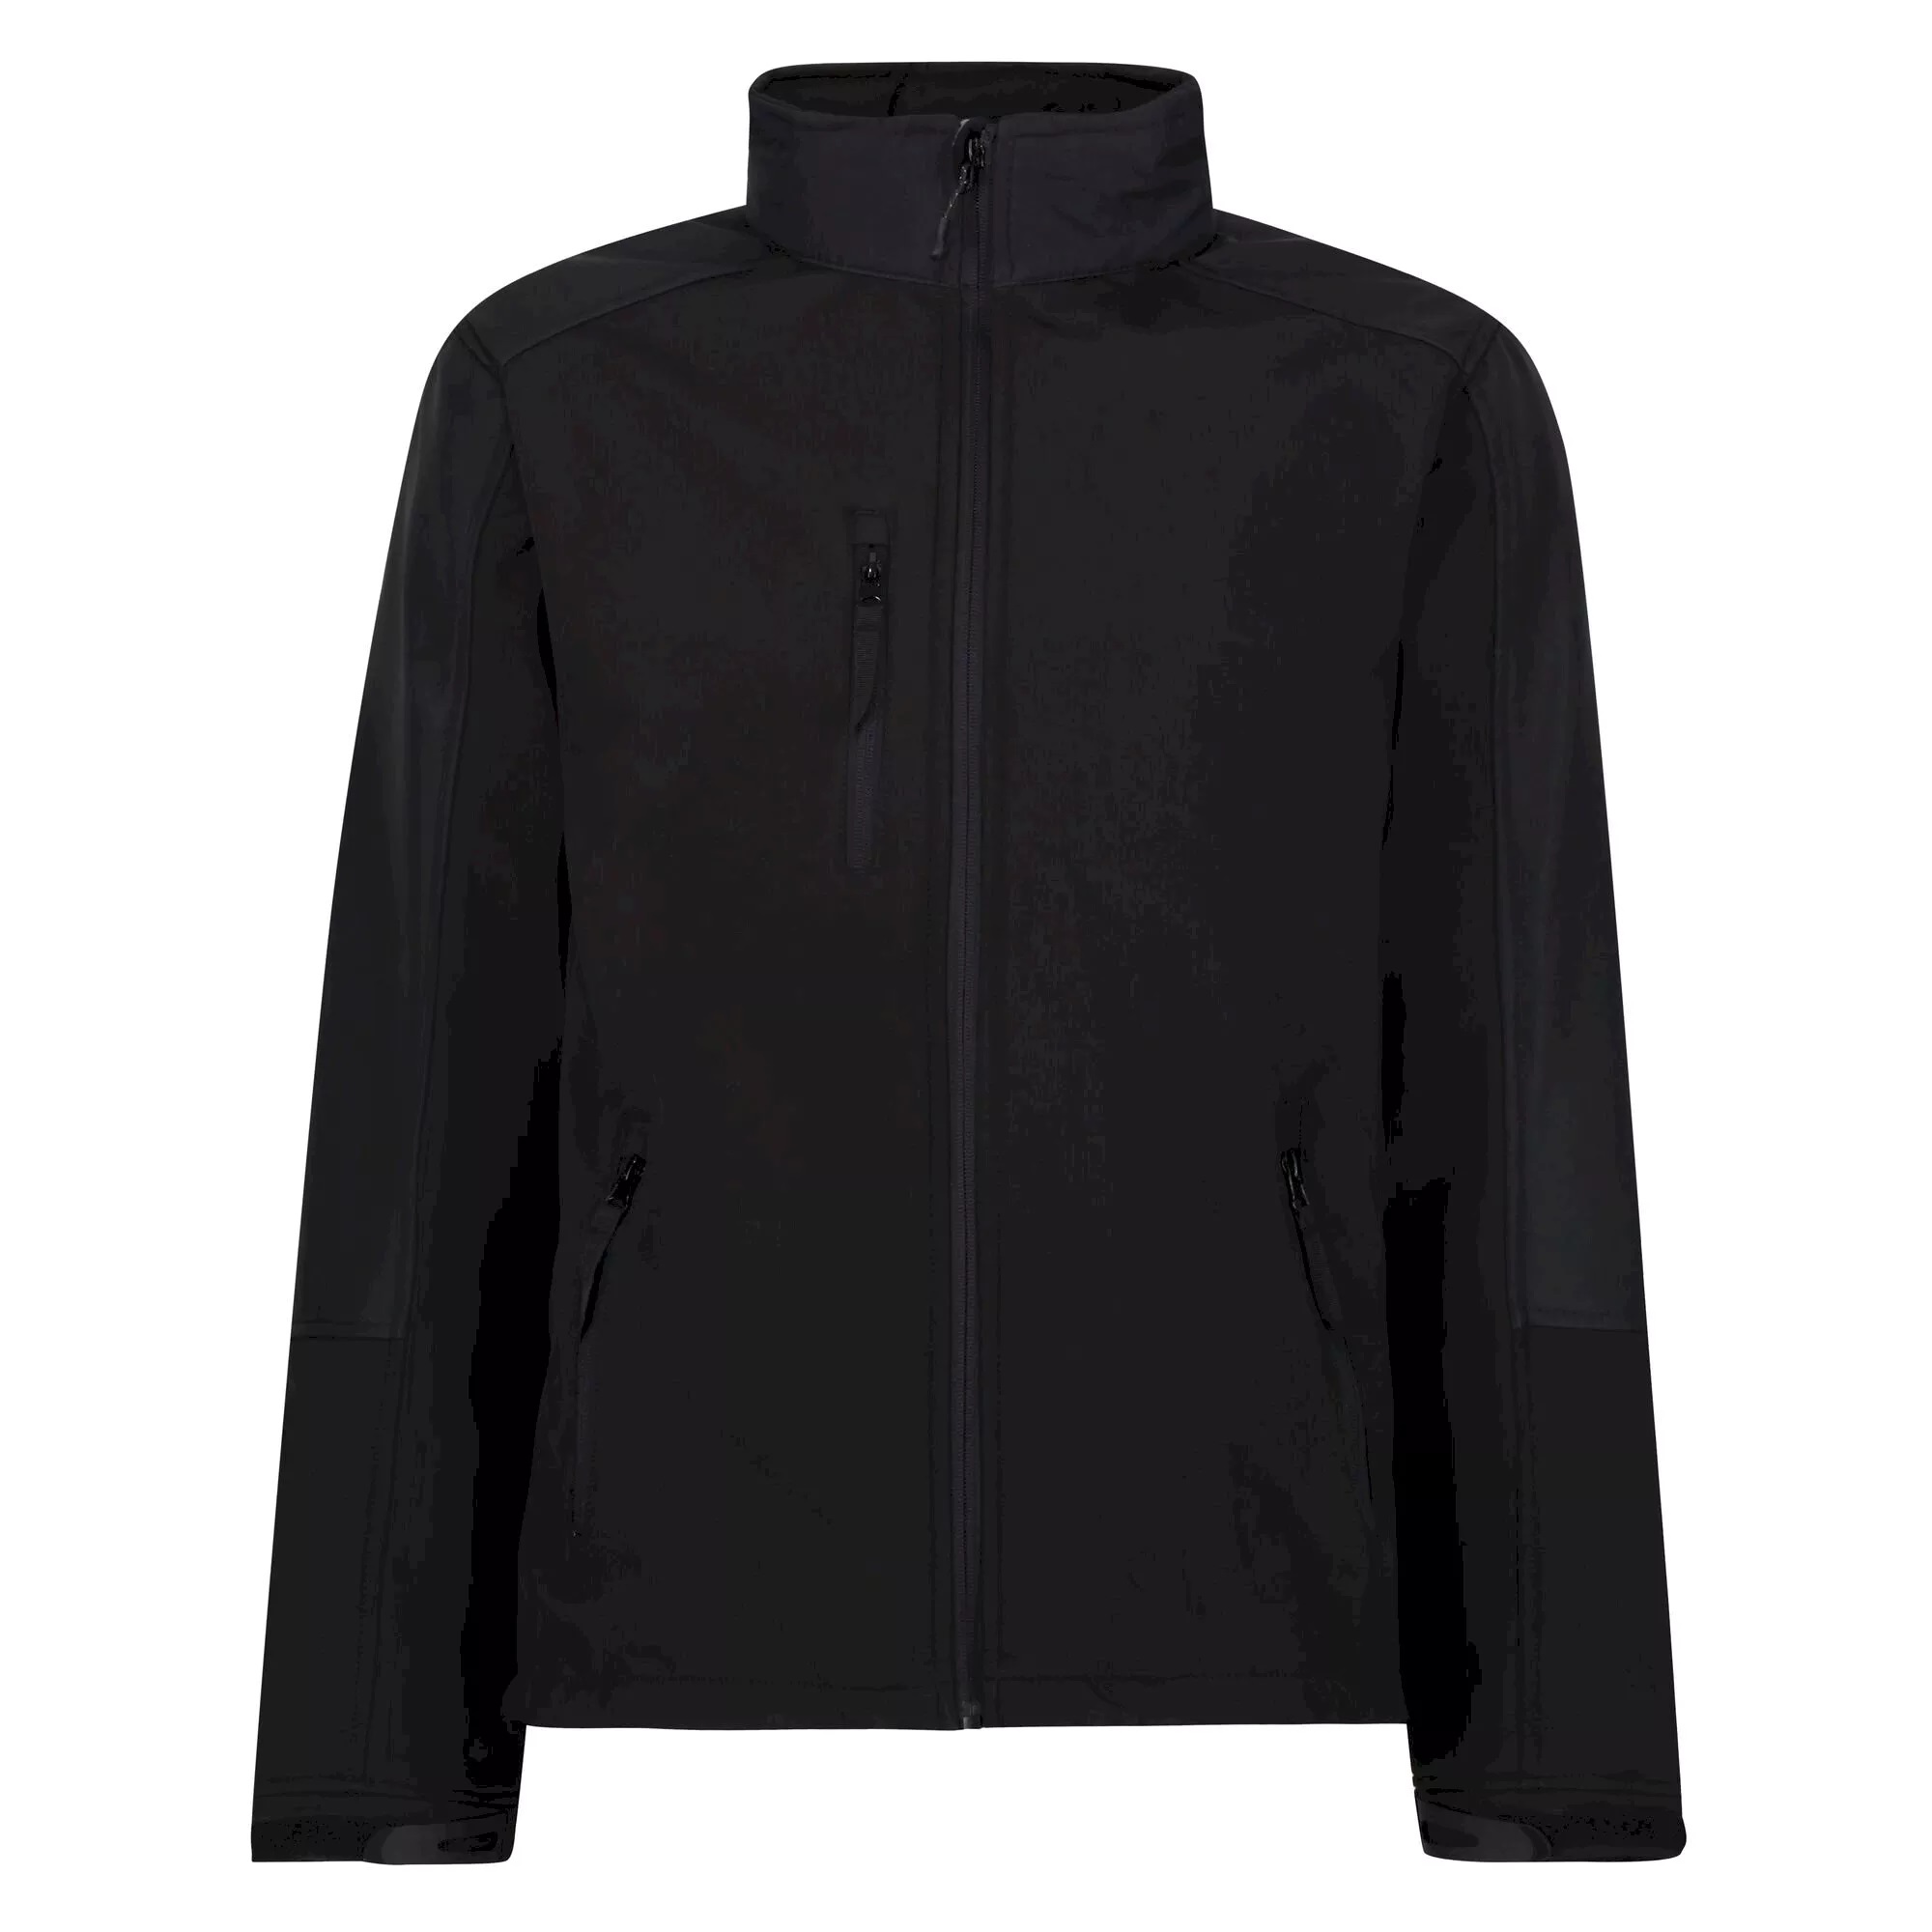 Regatta -chaqueta Softshell Repelente Al Agua Y Resistente Al Viento Modelo Reid - negro - 